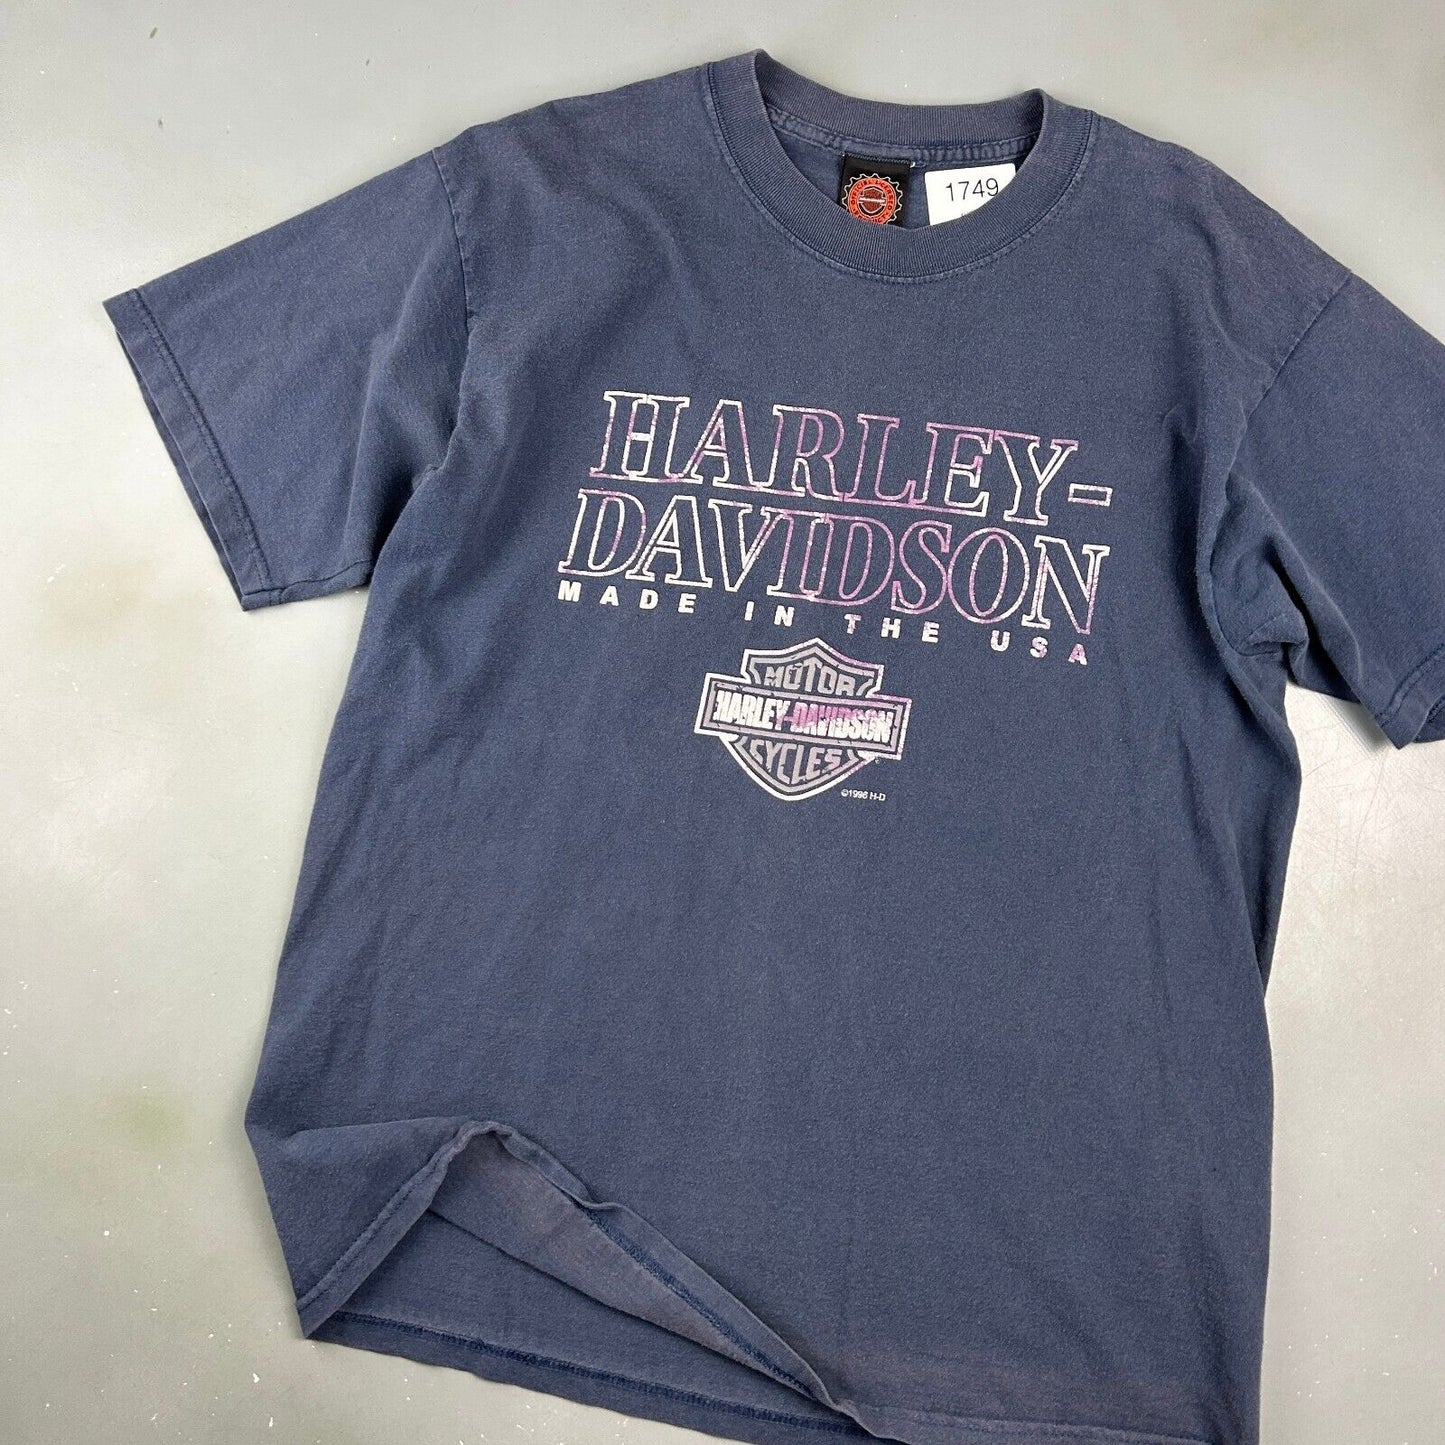 VINTAGE 1996 | HARLEY DAVIDSON Made in The USA Biker T-Shirt sz L Adult